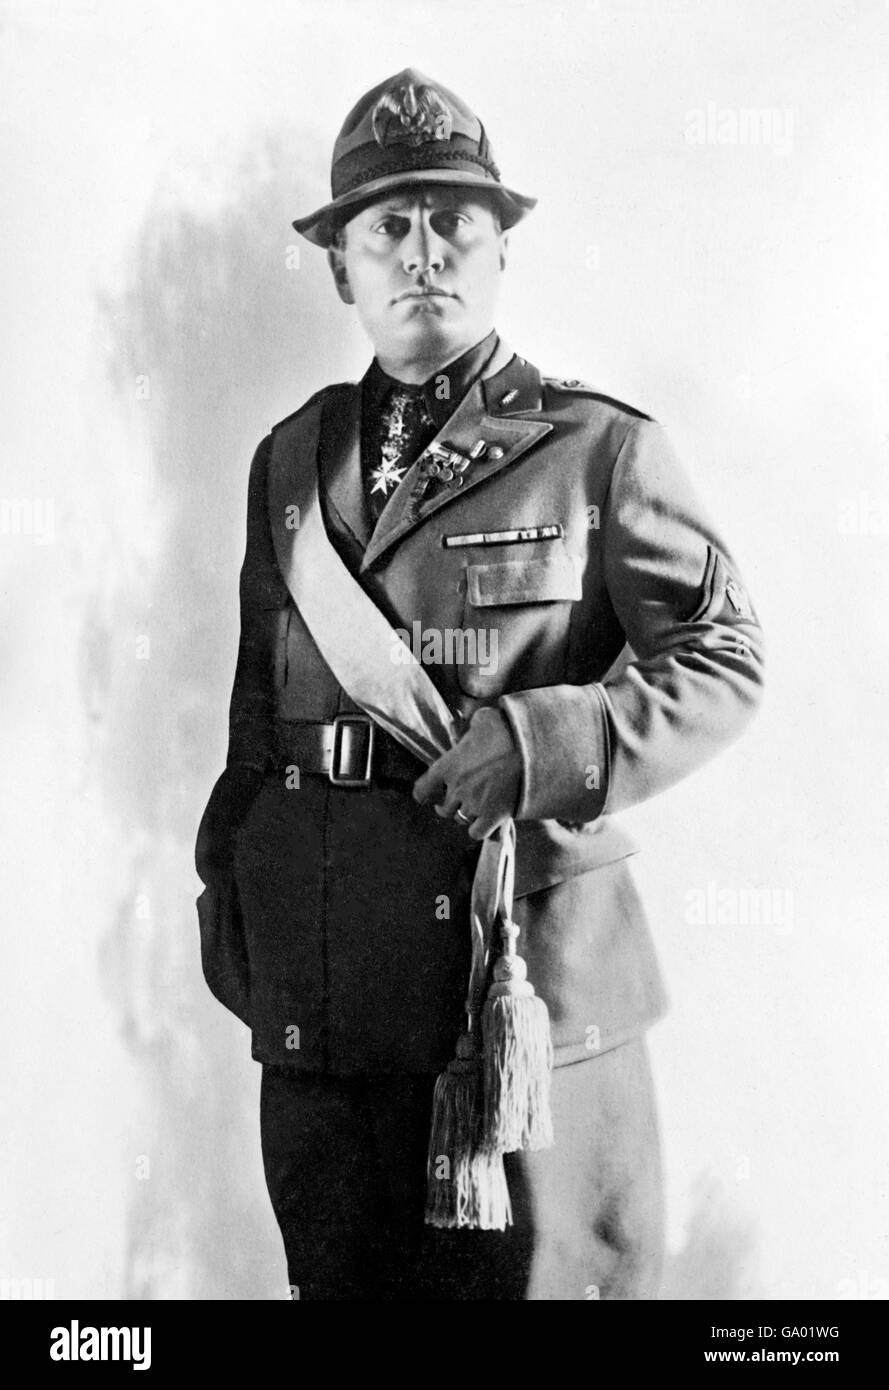 Mussolini. Portrait de Benito Amilcare Andrea Mussolini (1883-1945), le dictateur fasciste italien, en uniforme. Photo de Bain News Service, c.1924 Banque D'Images